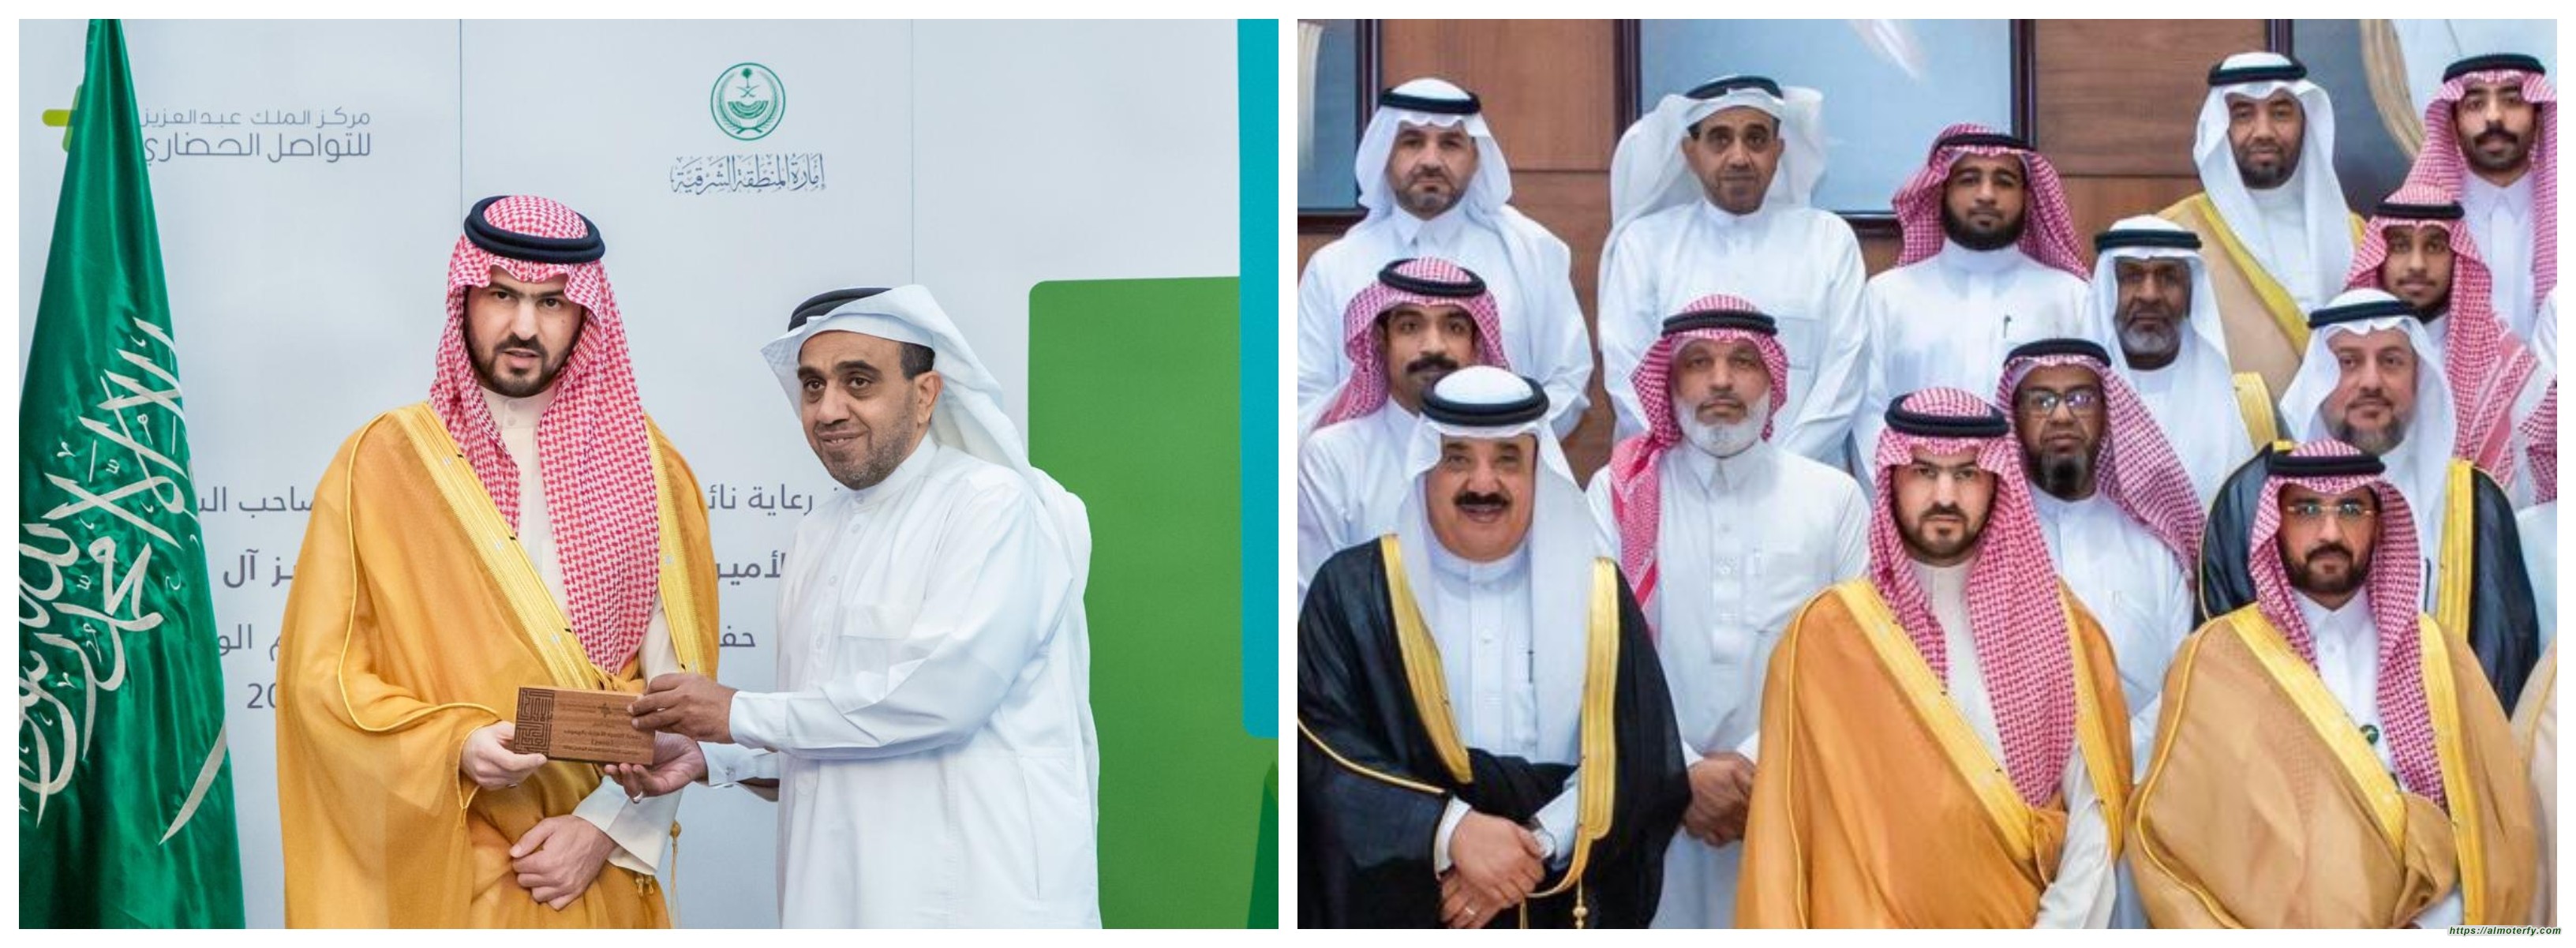 جمعية العمران الخيرية بالاحساء للخدمات الاجتماعية تحظى بتكريم مرموق من مركز الملك عبد العزيز للتواصل الحضاري .